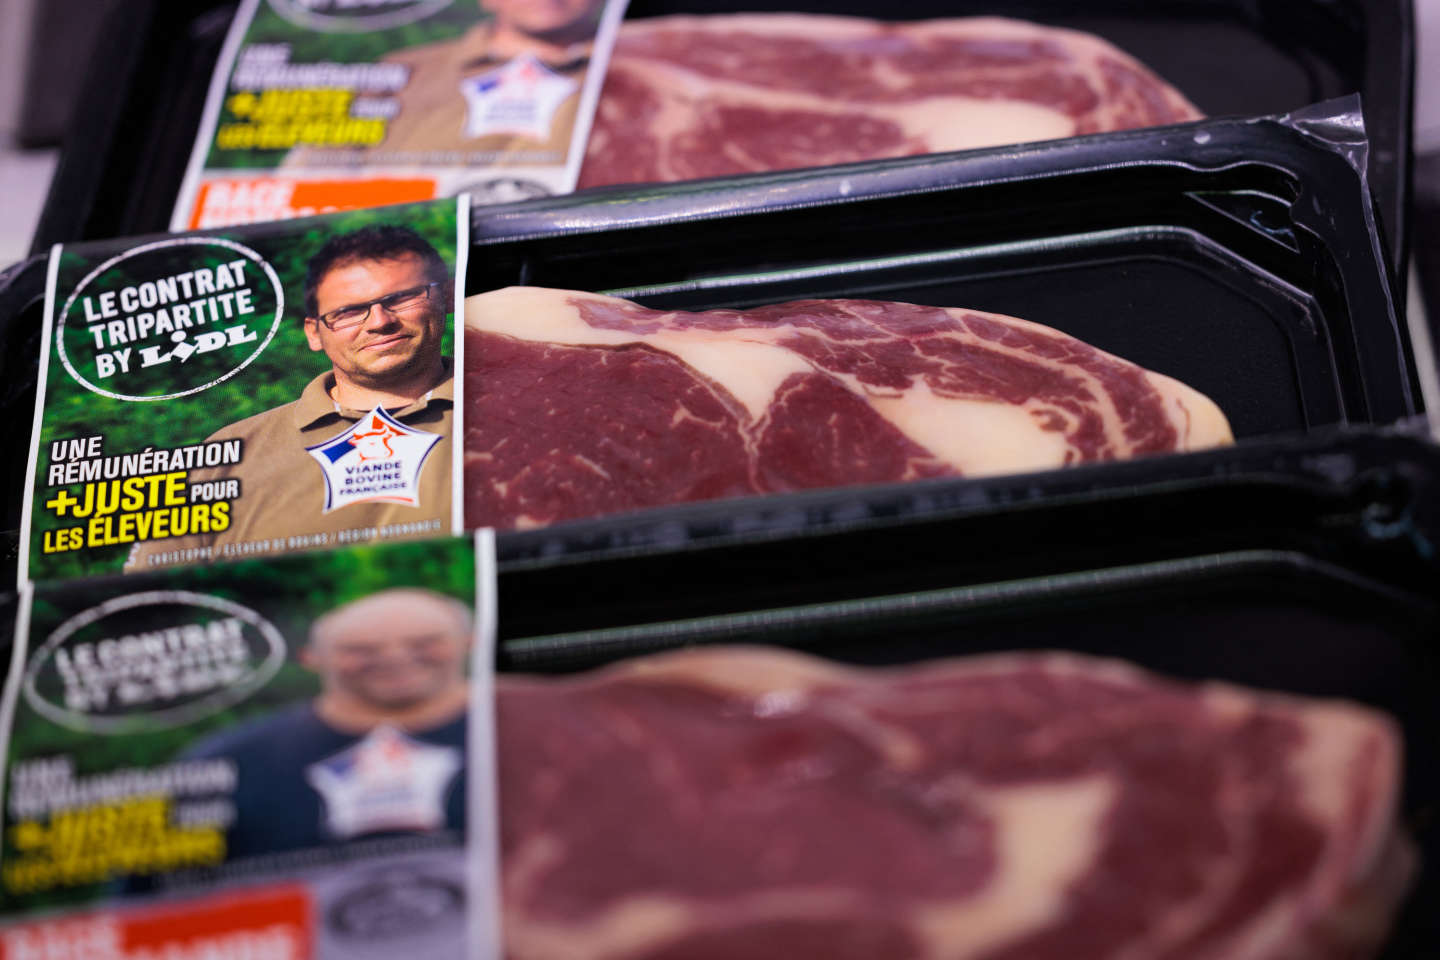 « La consommation de viande bovine connaît un léger recul certes, mais pas d’effondrement »